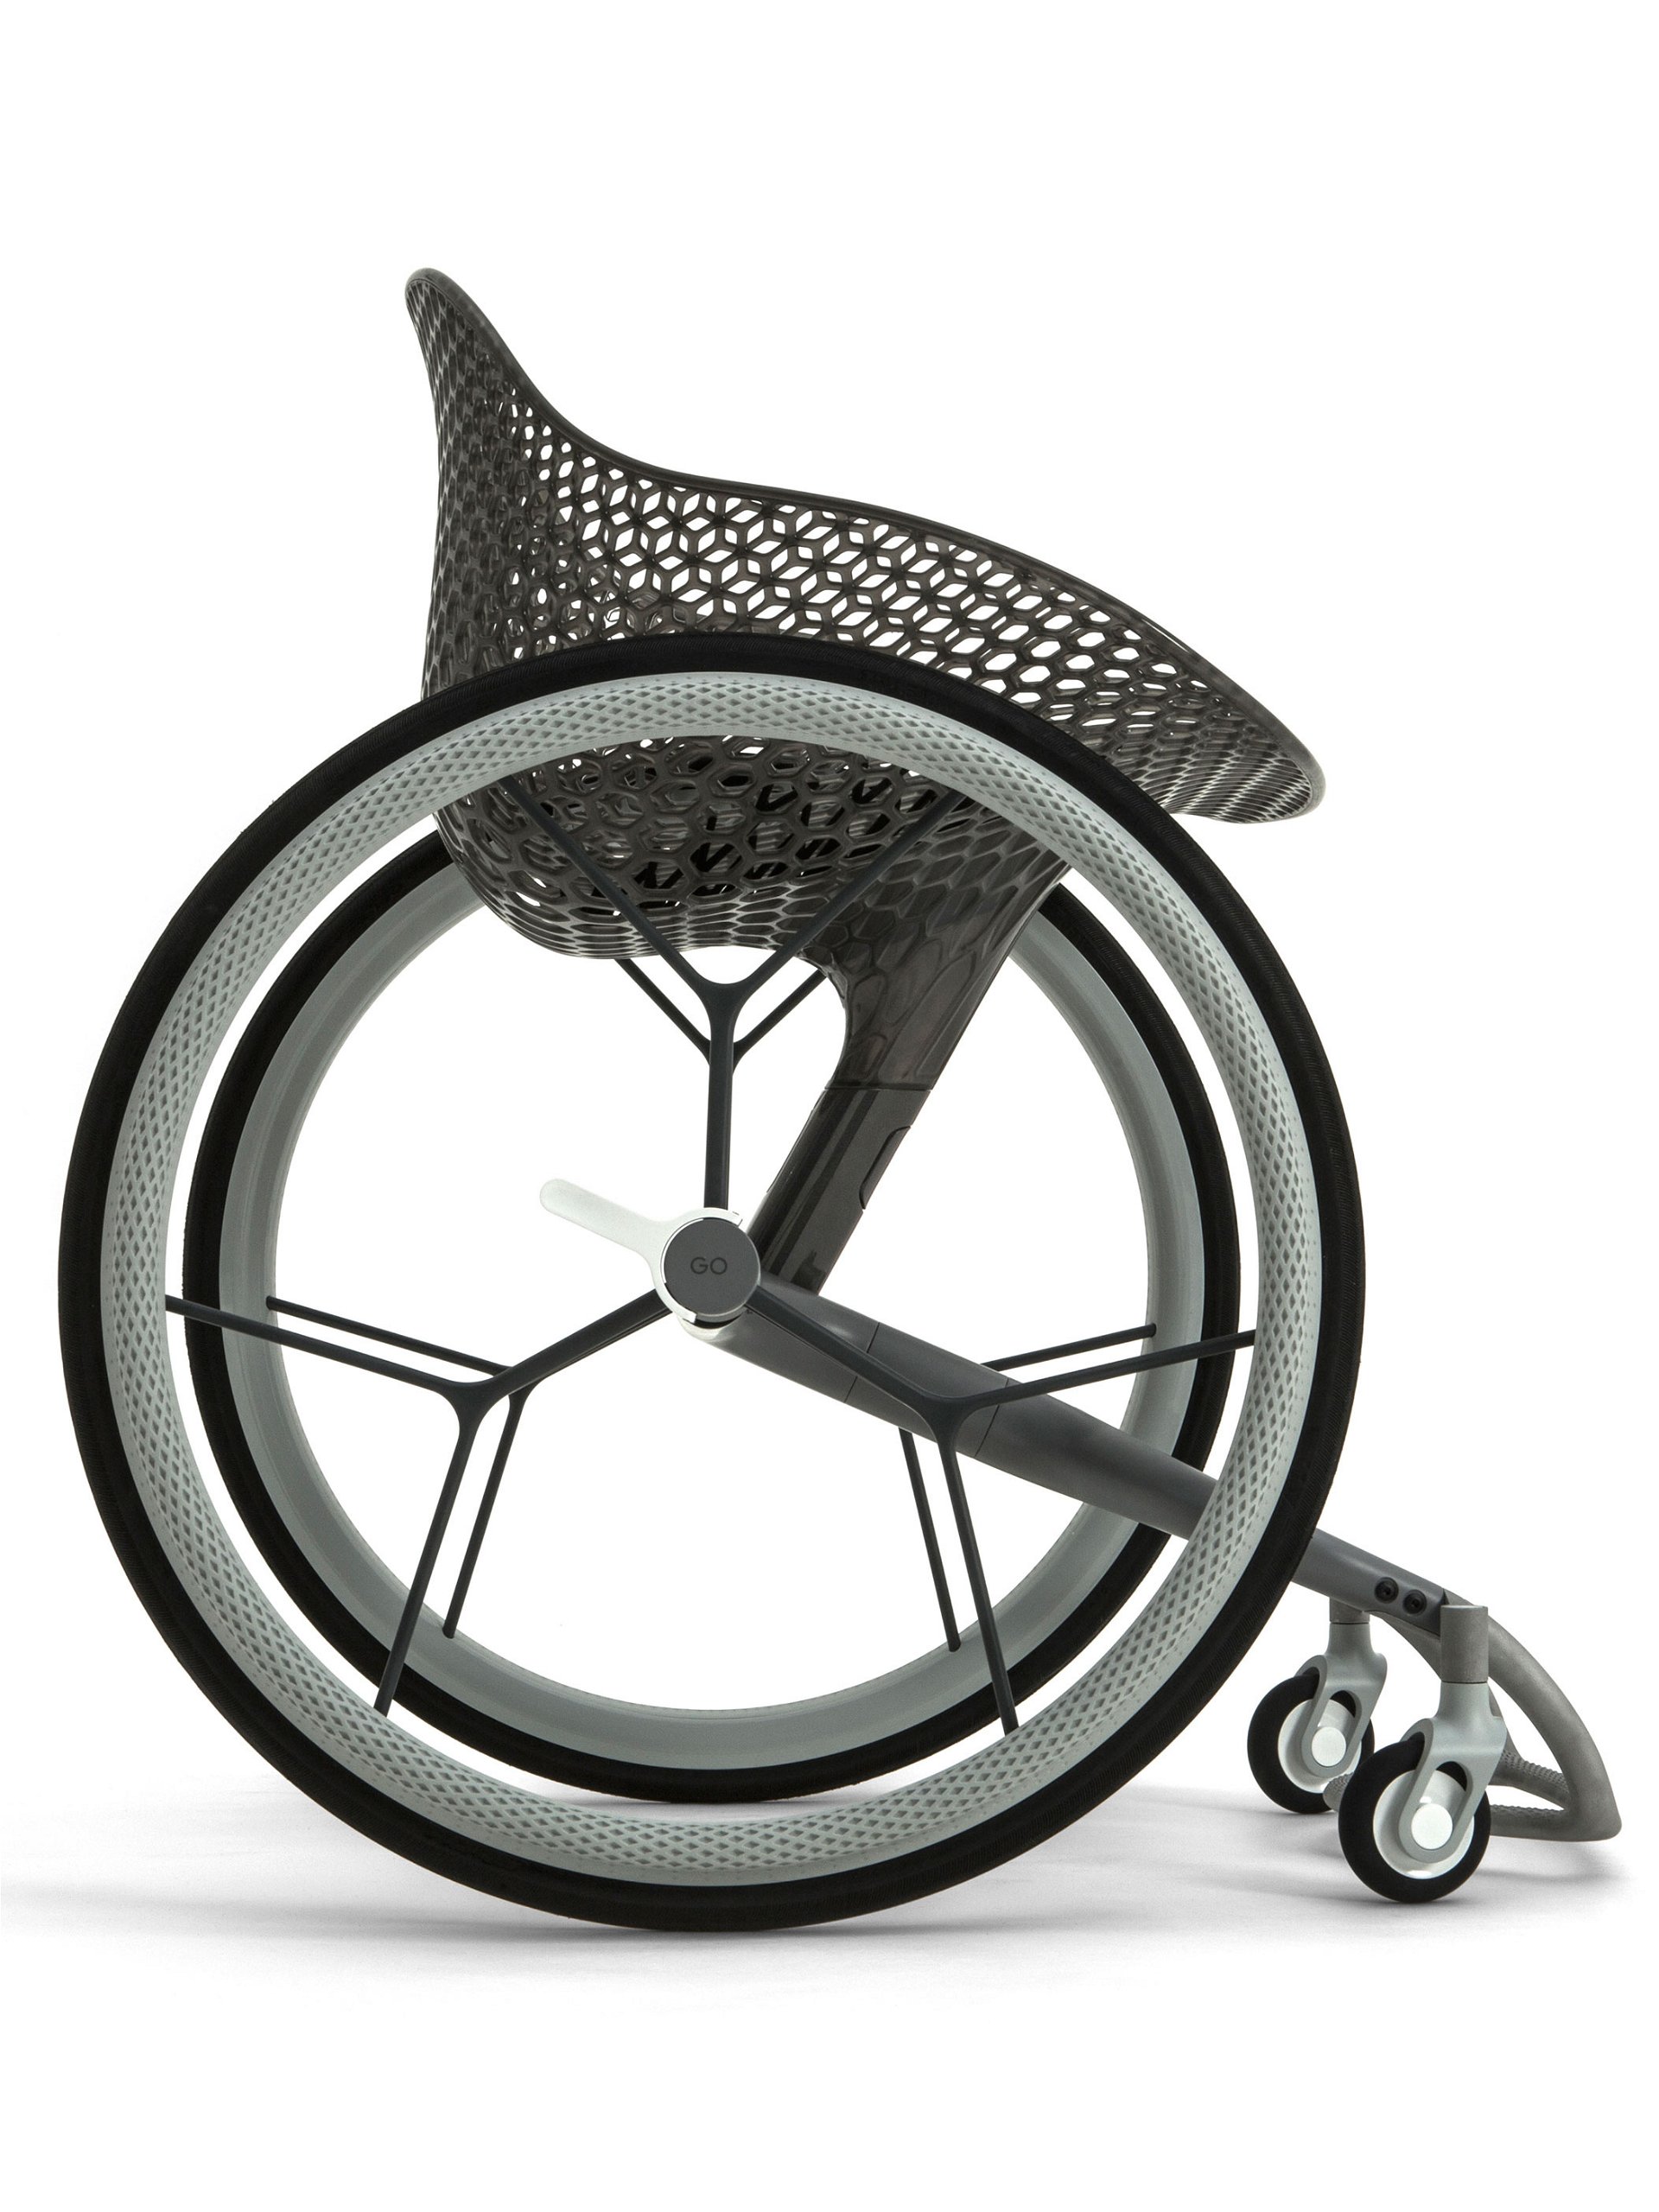 Innovativ »Go« ist ein maßgeschneiderter Rollstuhl aus dem 3D-Drucker, der sich den individuellen Bedürfnissen einer Vielzahl von Behinderungen anpasst.